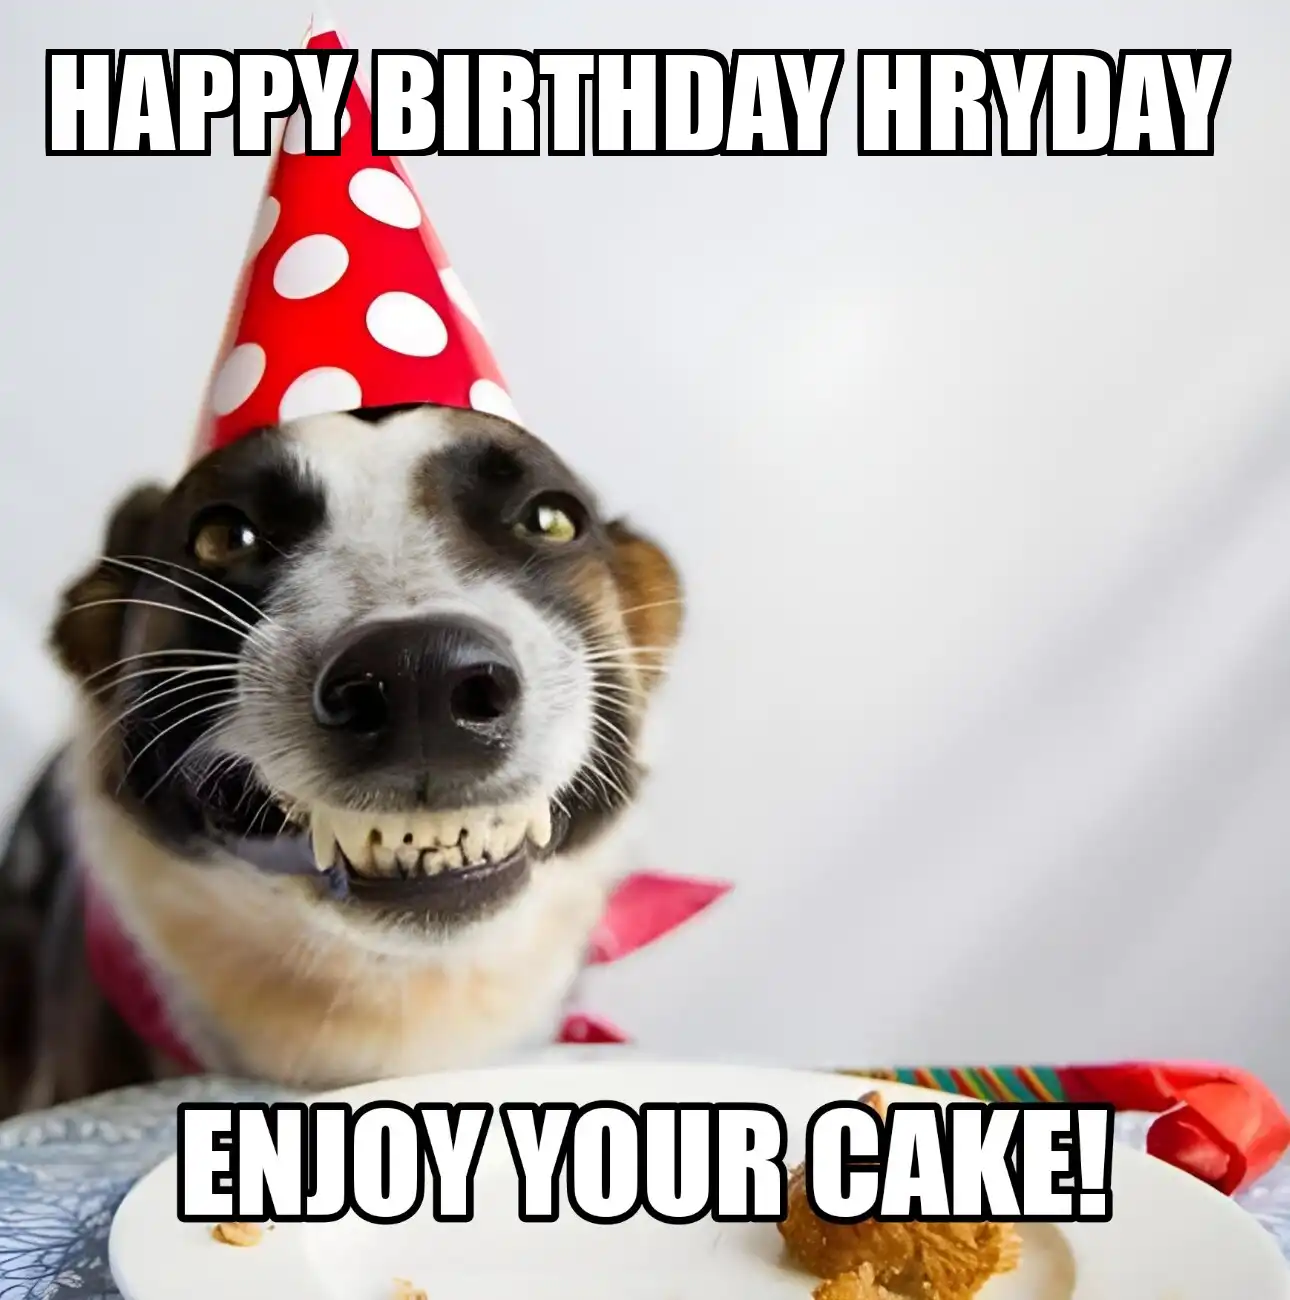 Happy Birthday Hryday Enjoy Your Cake Dog Meme